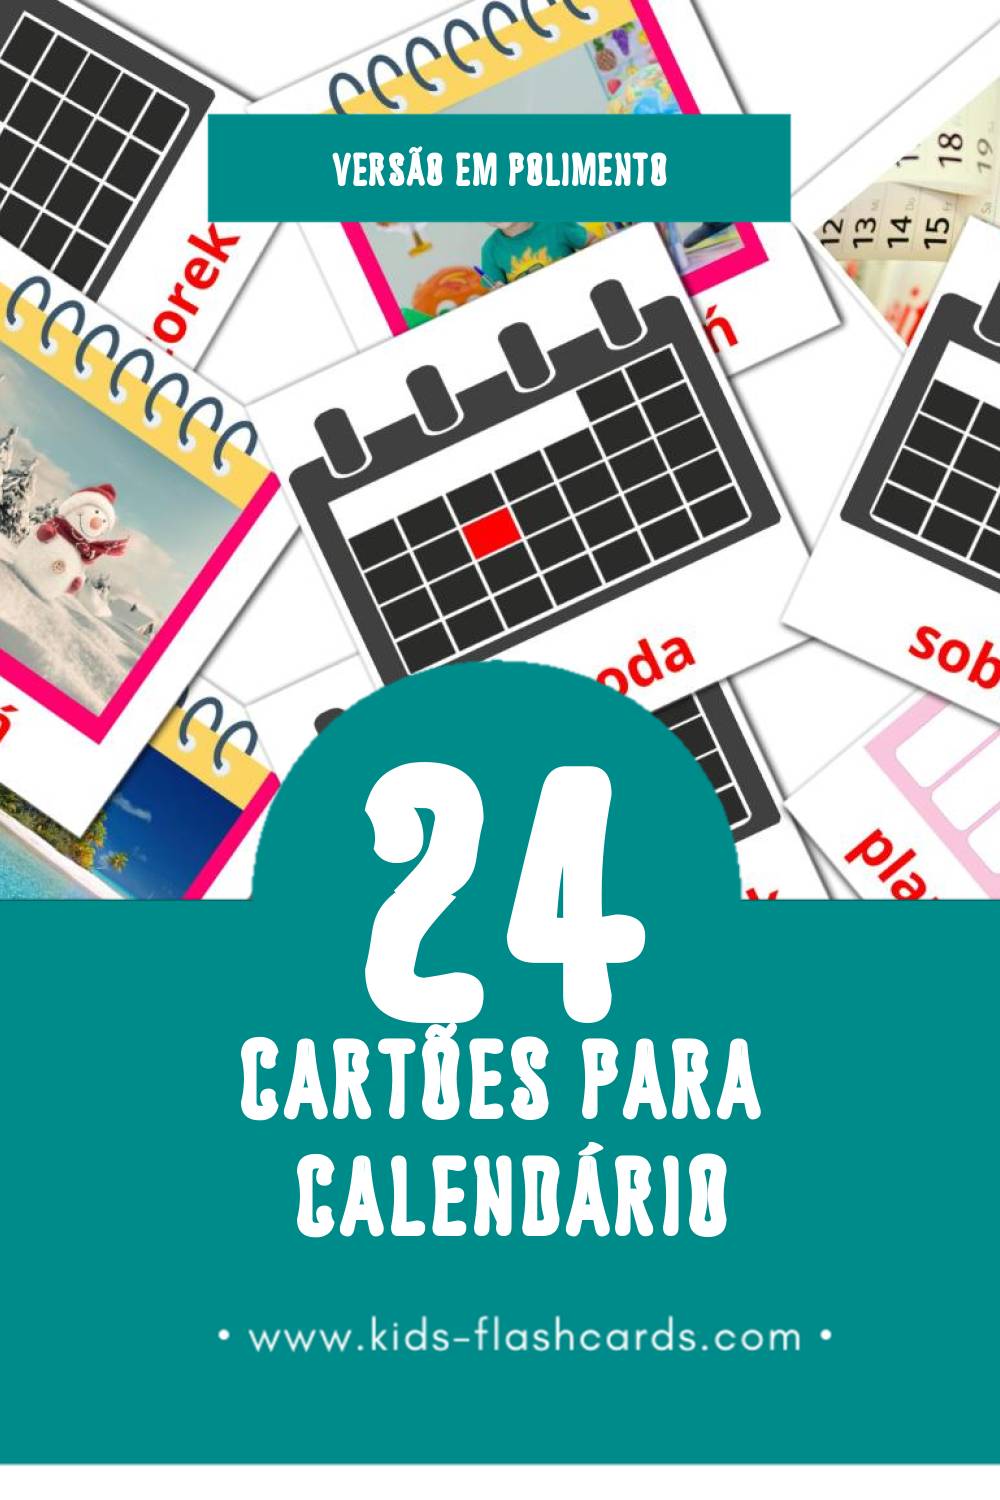 Flashcards de Kalendarz Visuais para Toddlers (24 cartões em Polimento)